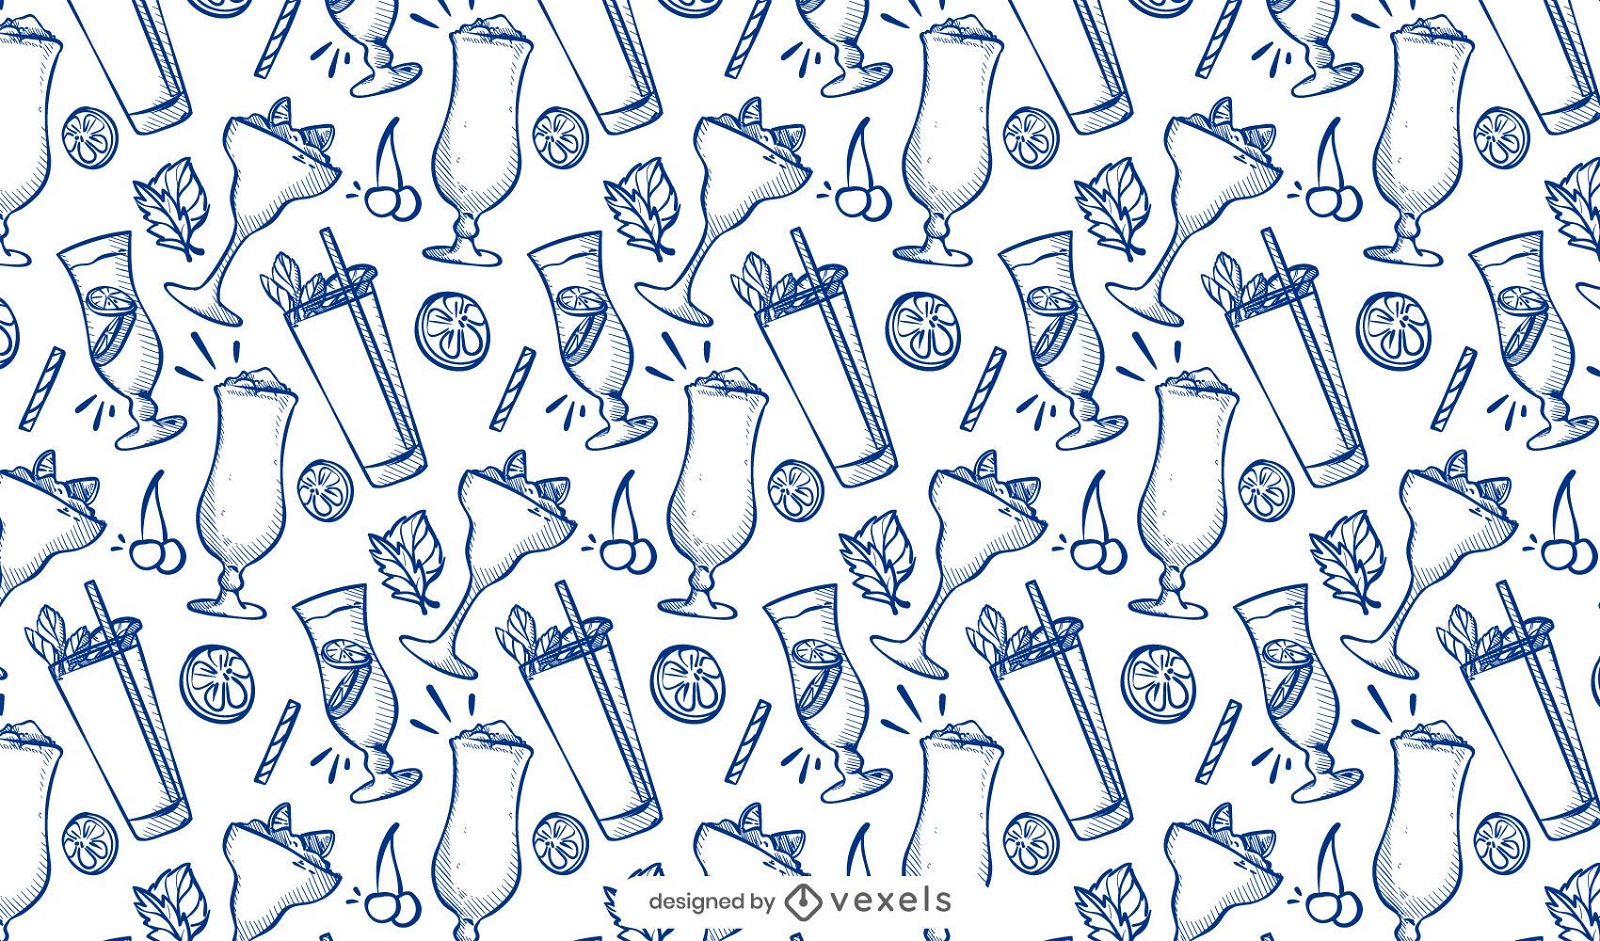 Cocktail doodle pattern design